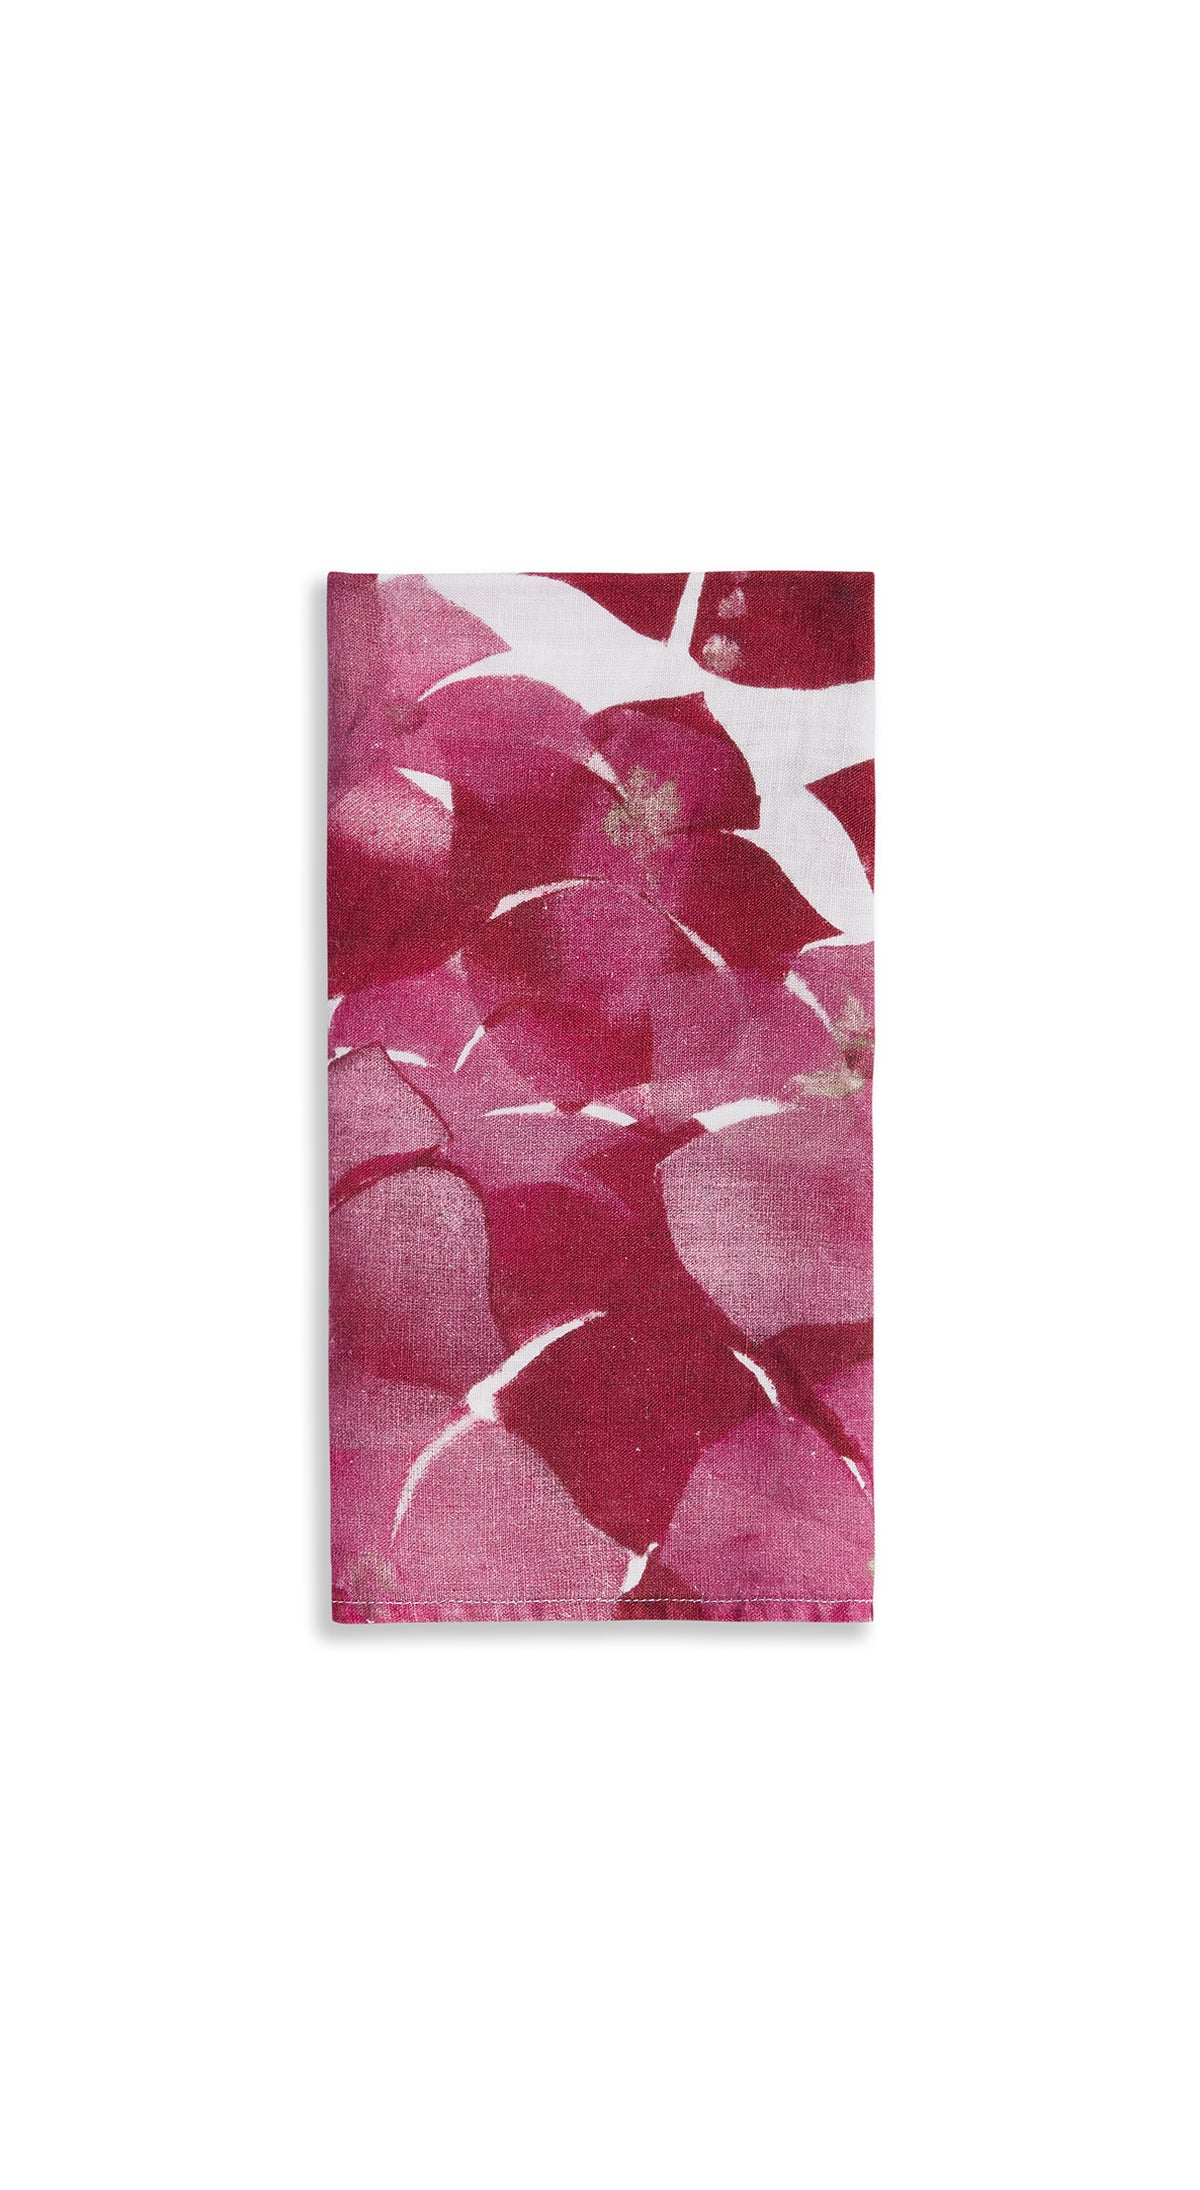 Hydrangea Linen Napkin in Pink, 50x50cm